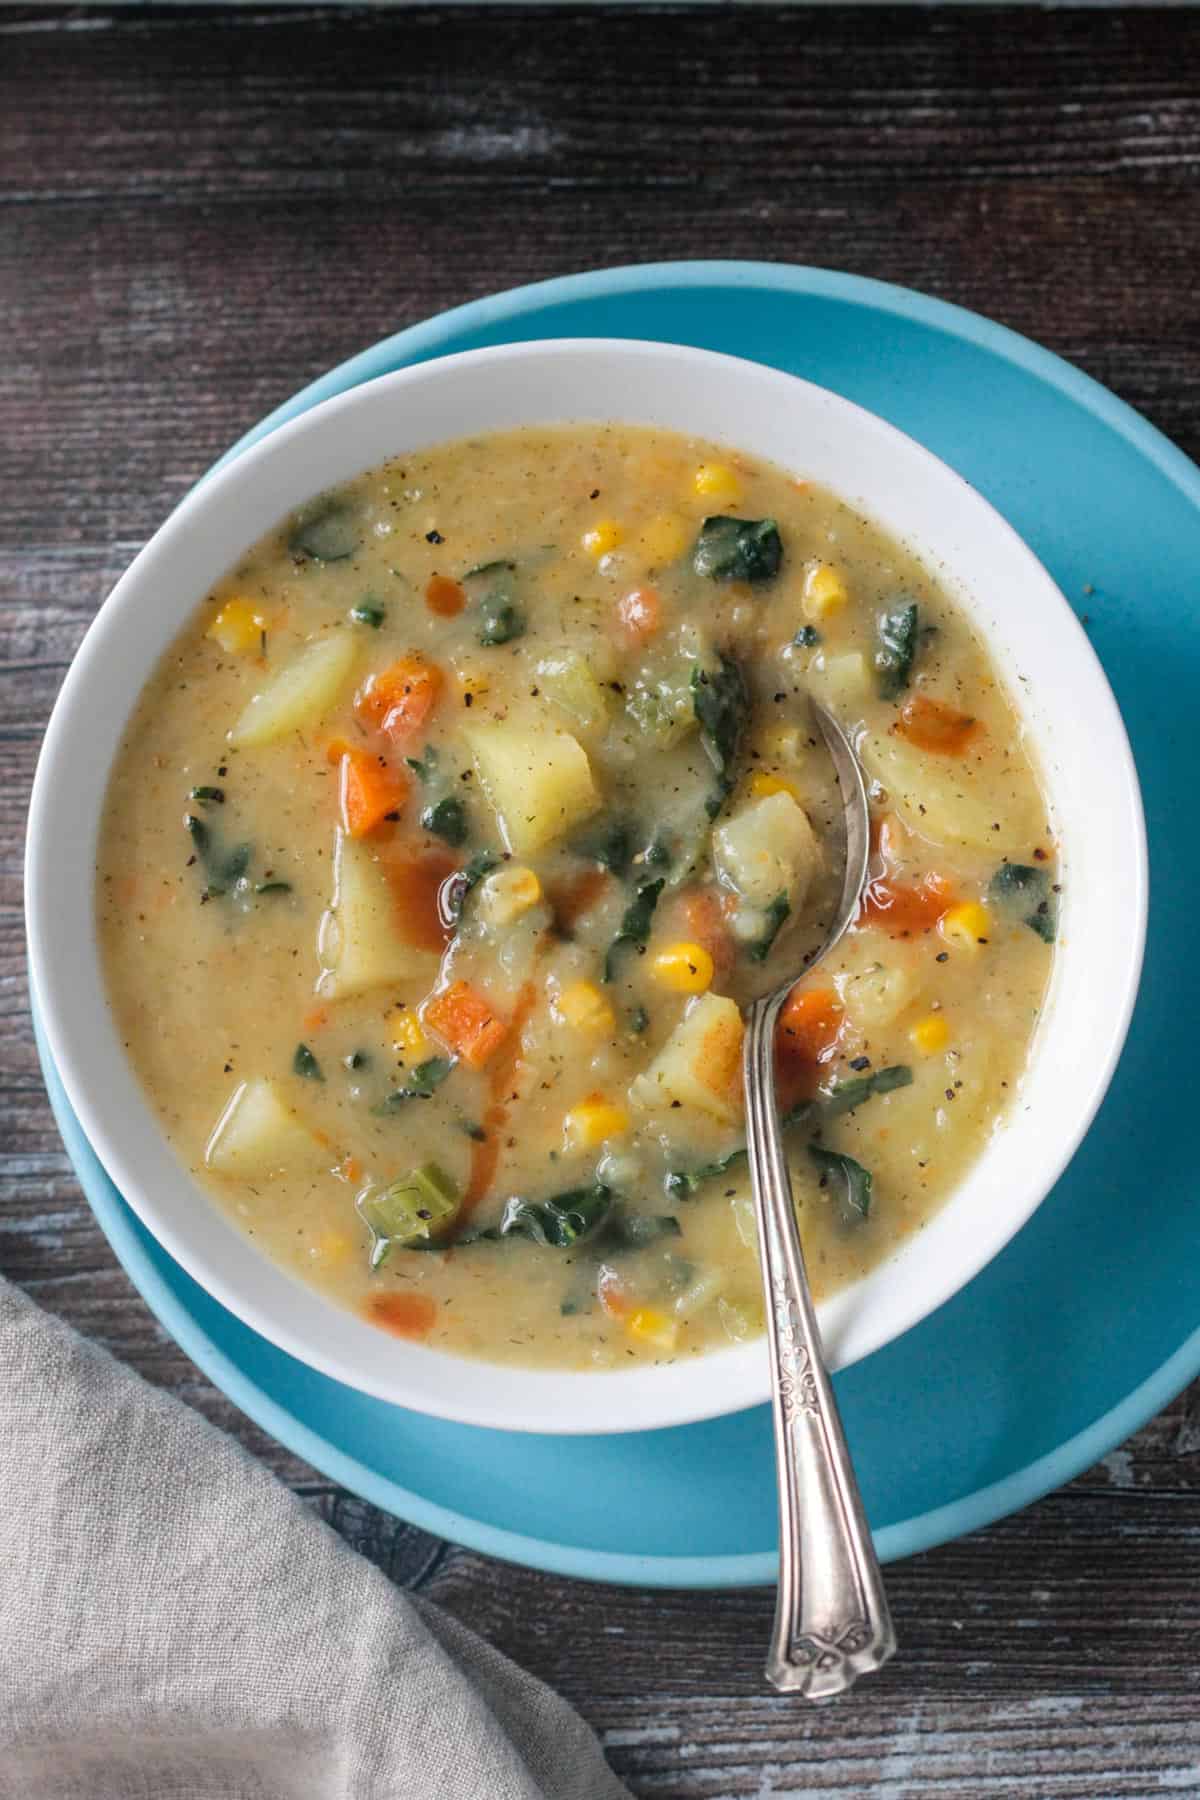 Metal spoon in a bowl of potato kale soup.